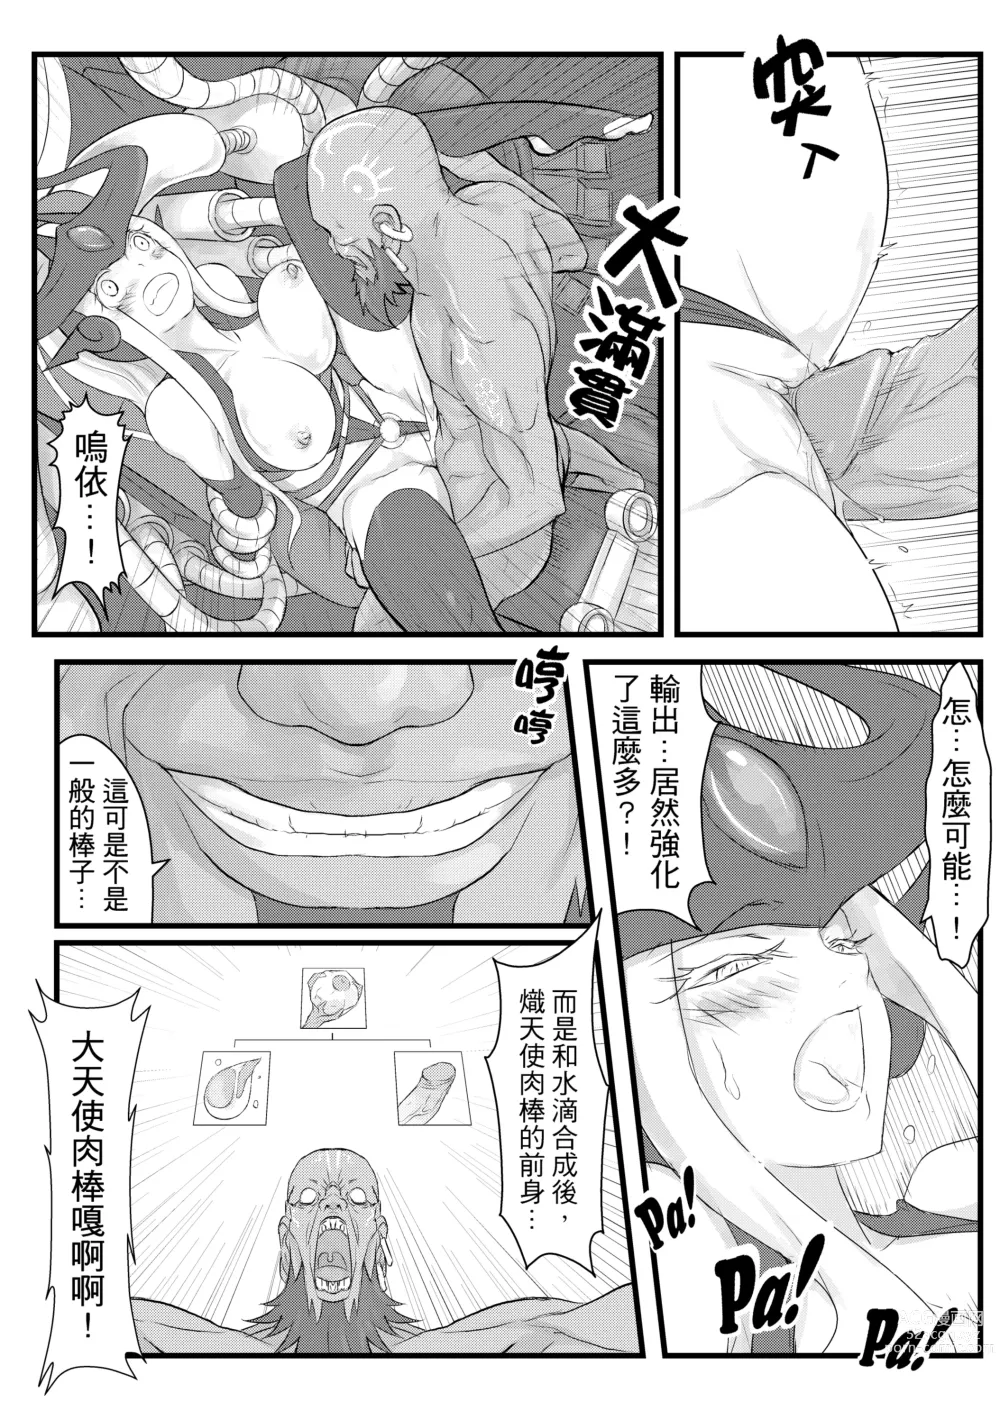 Page 13 of doujinshi ININ Renmei (uncensored)